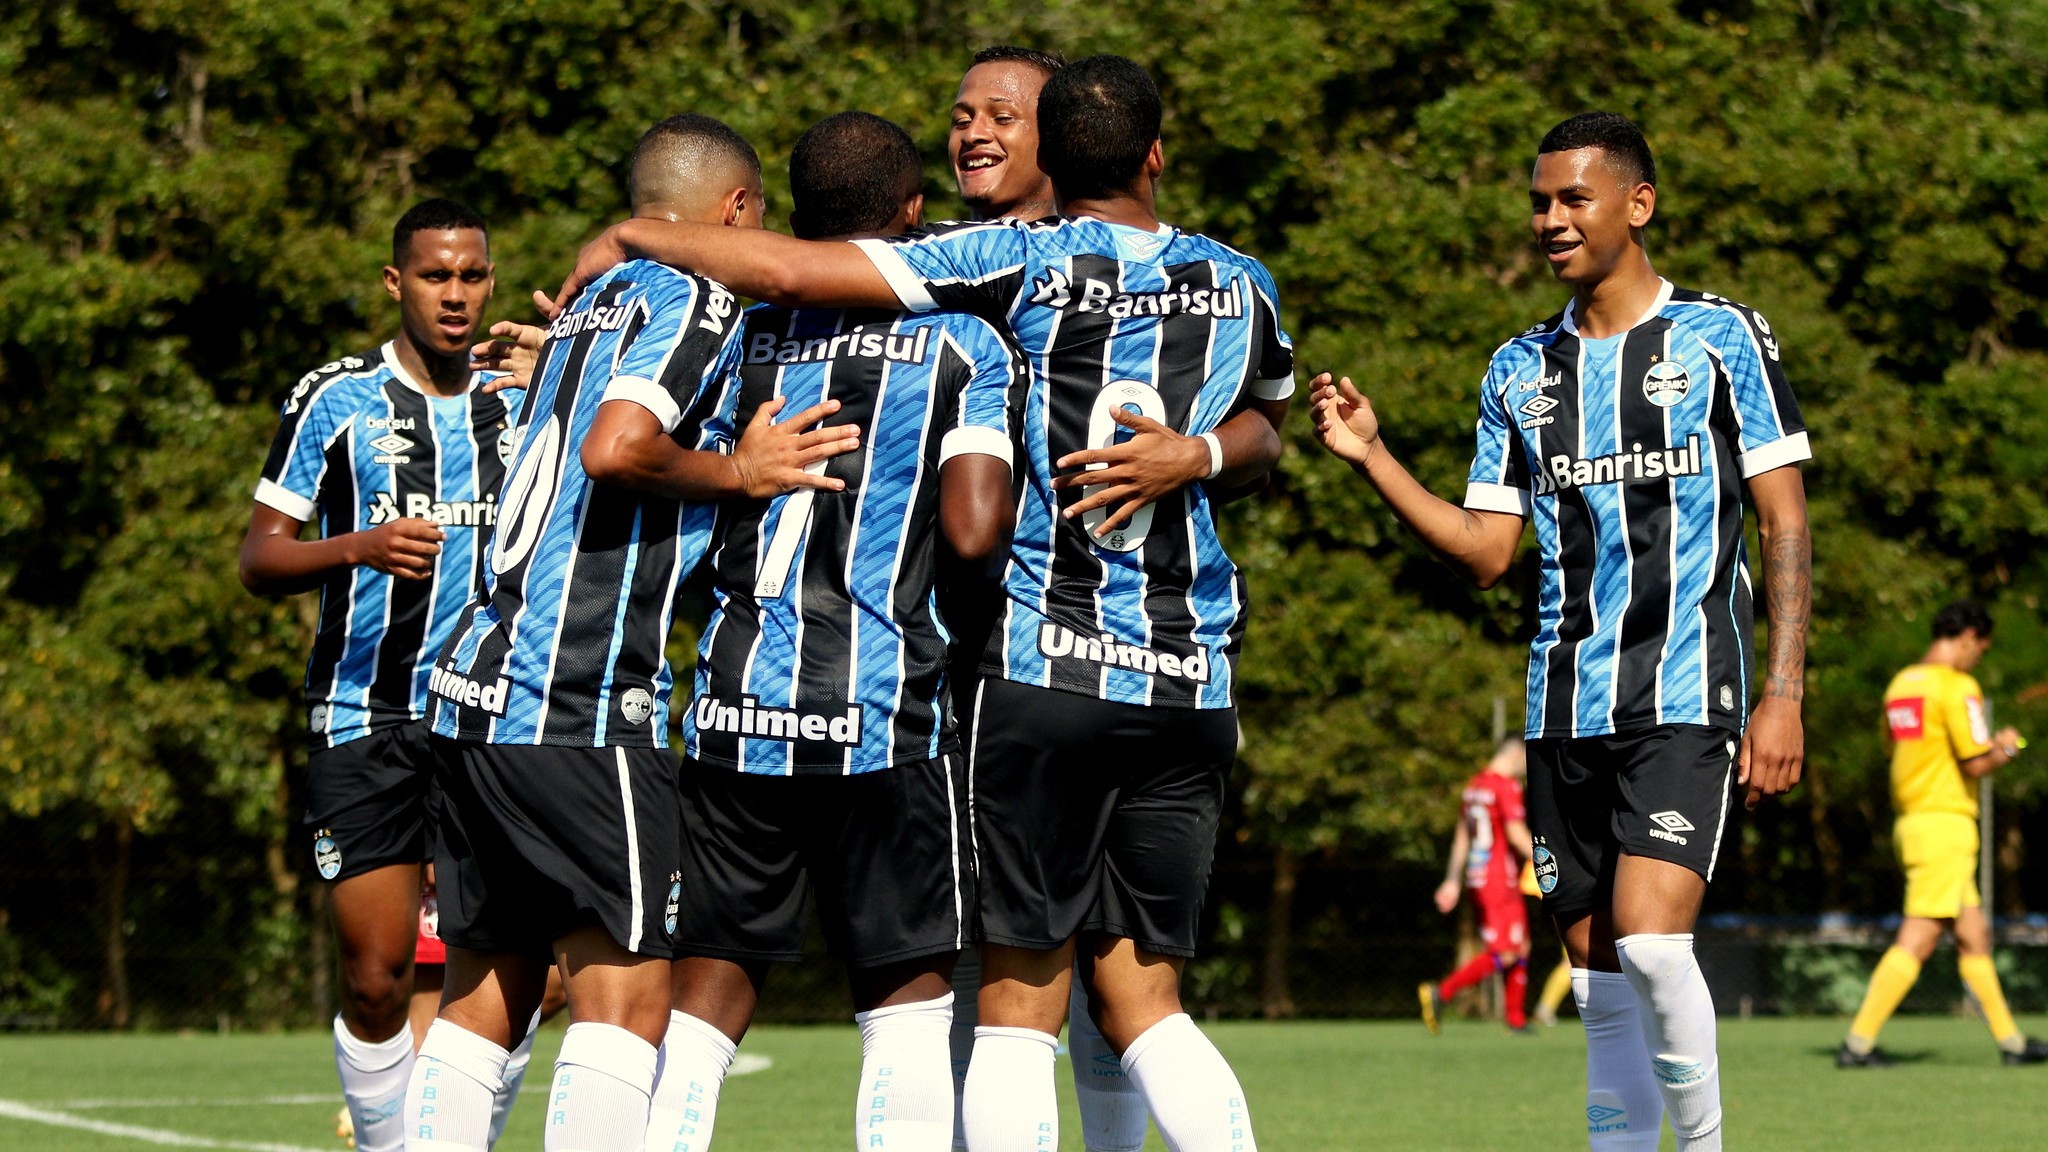 ESPECIAL BRASILEIRÃO DE ASPIRANTES: Grêmio aposta na tradição e em grupo jovem para buscar o título